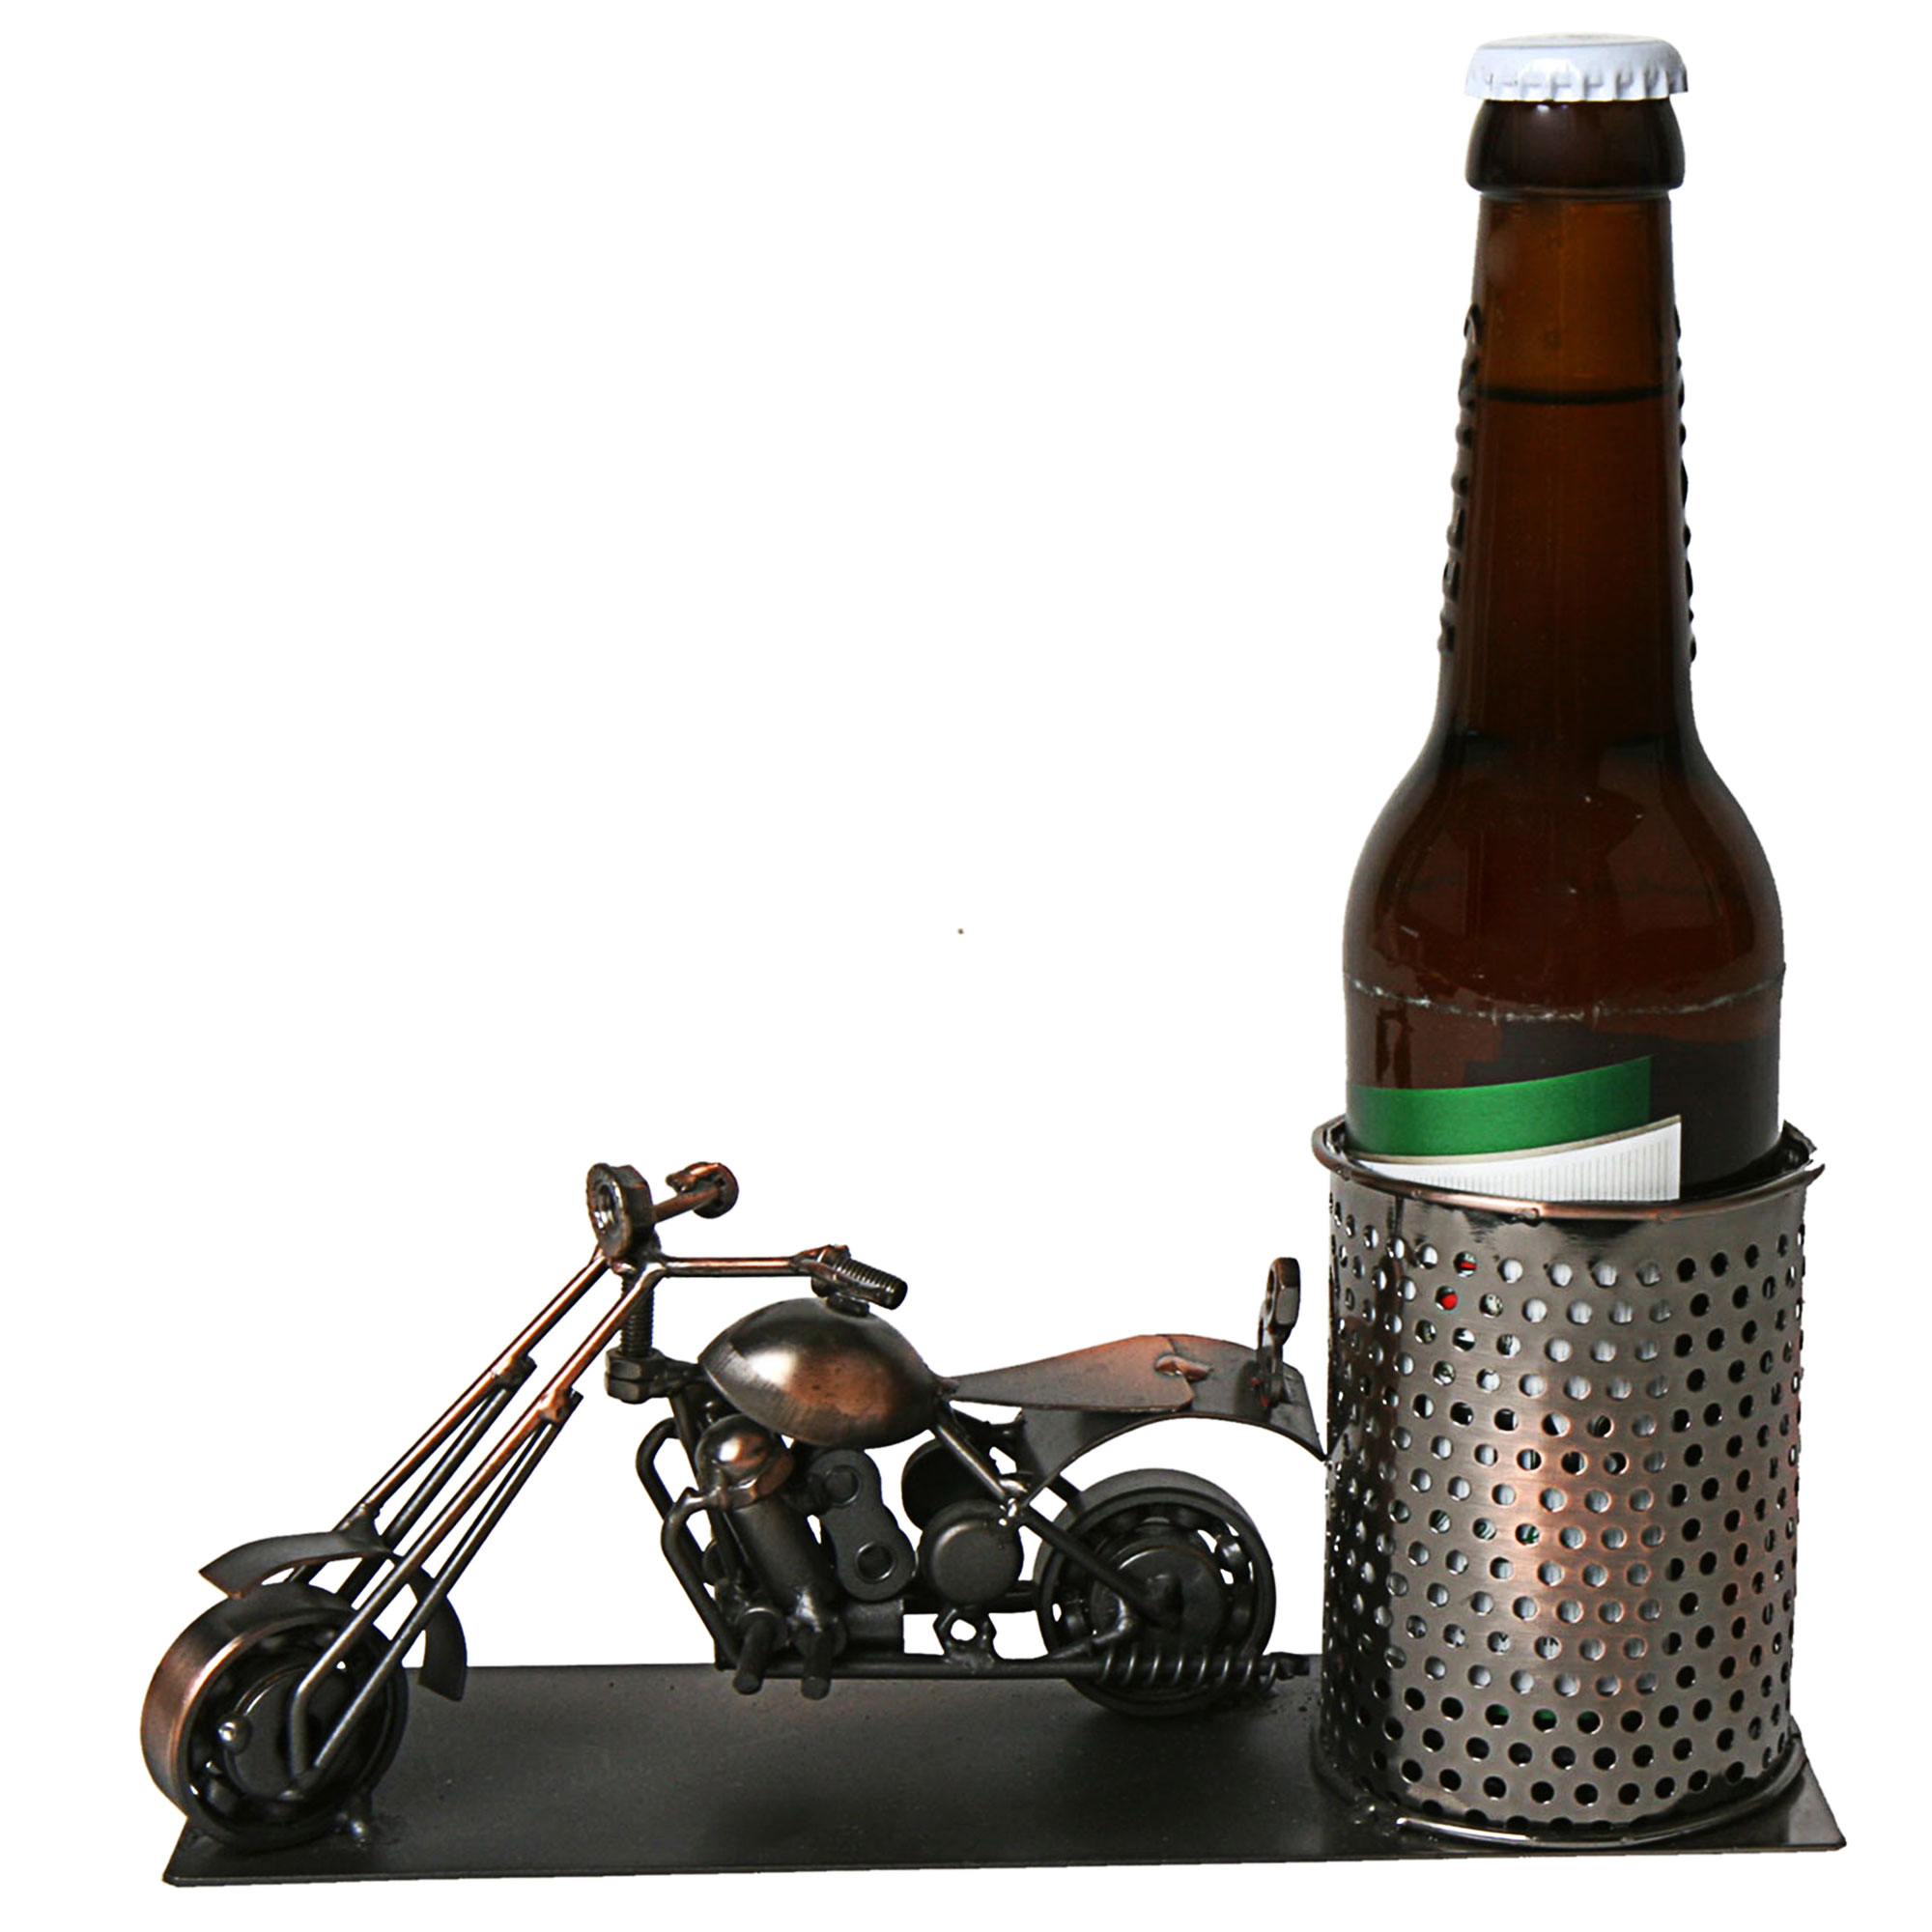 Flaschenhalter 'Motorrad' – Vernickelt, Für Weinflaschen, Metall